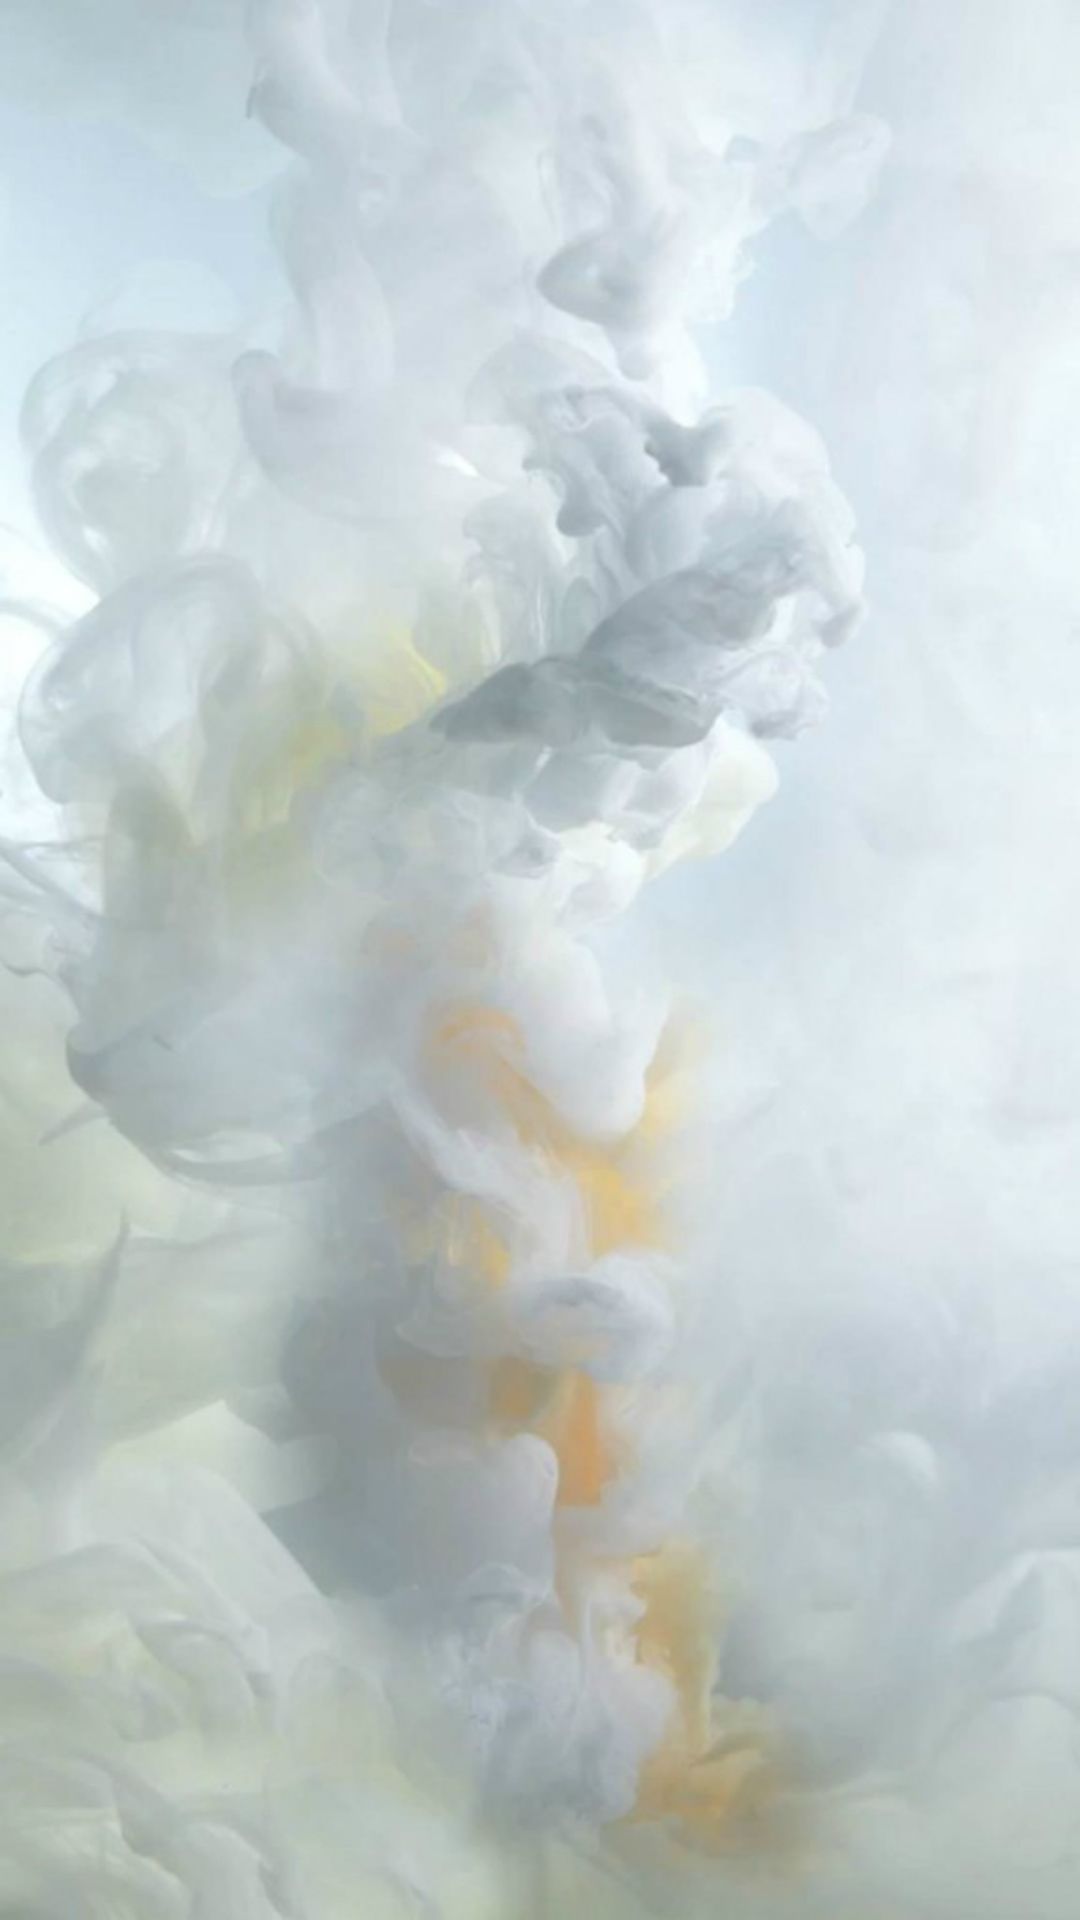 Smoke Cloud Wallpapers On Wallpaperdog